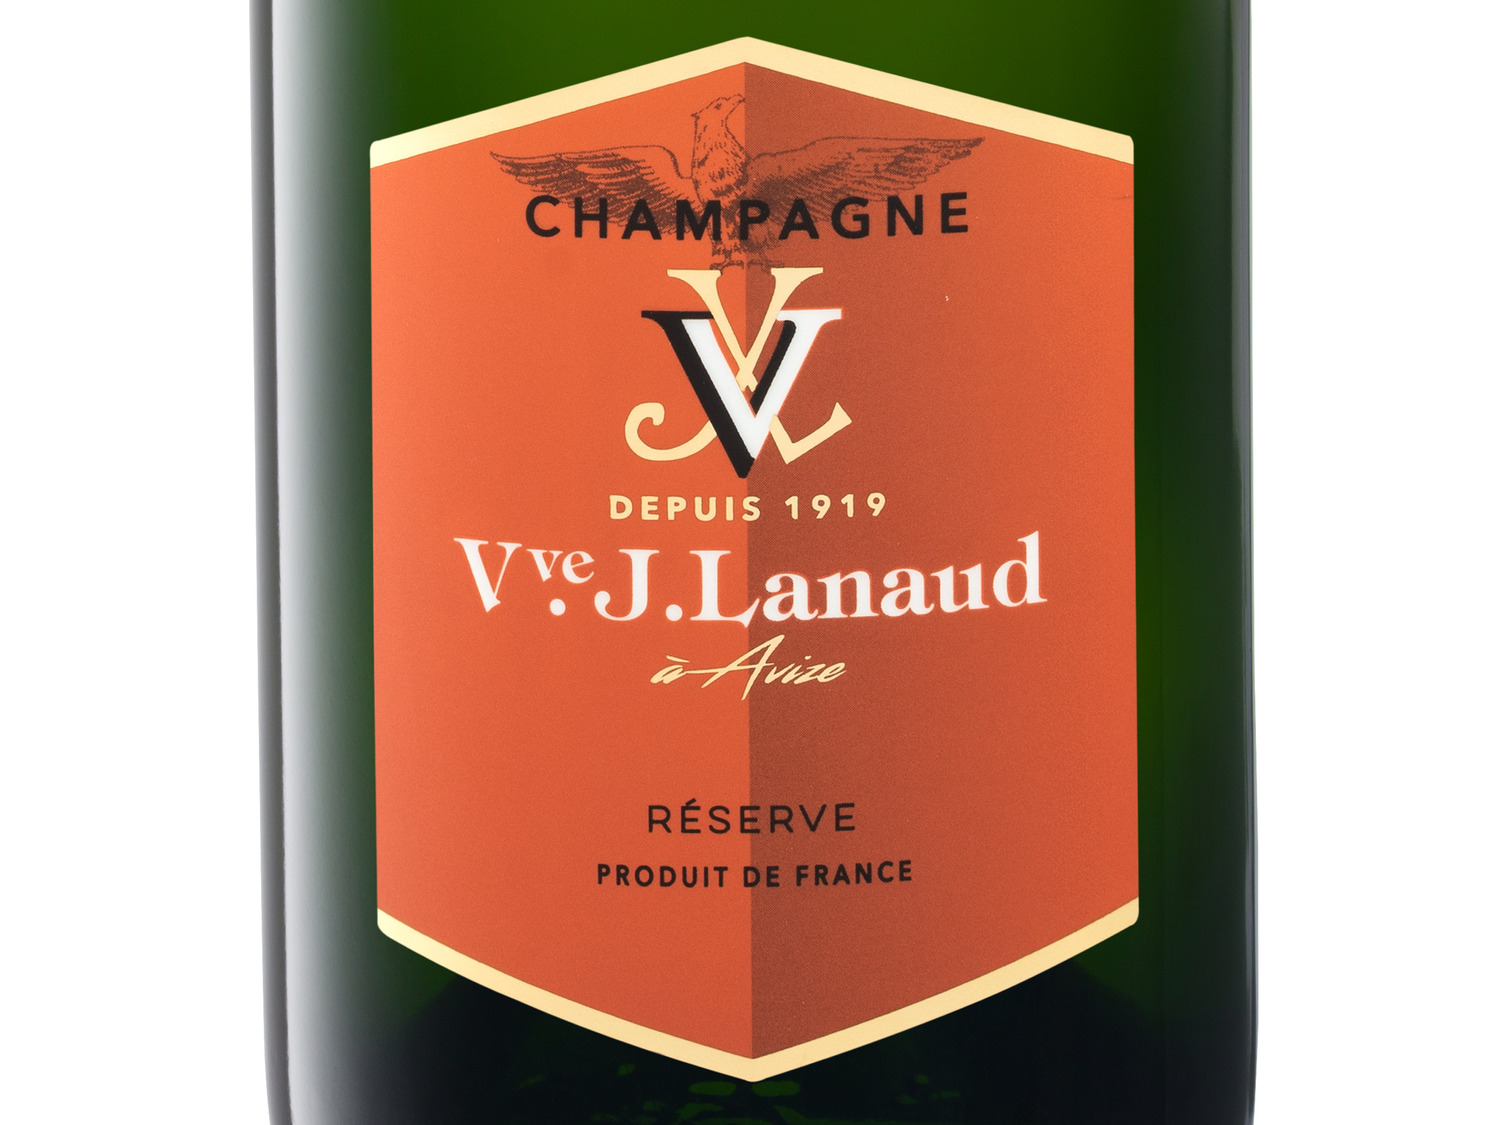 Réserve Cuvée Veuve brut, Champagner de J. Lanaud